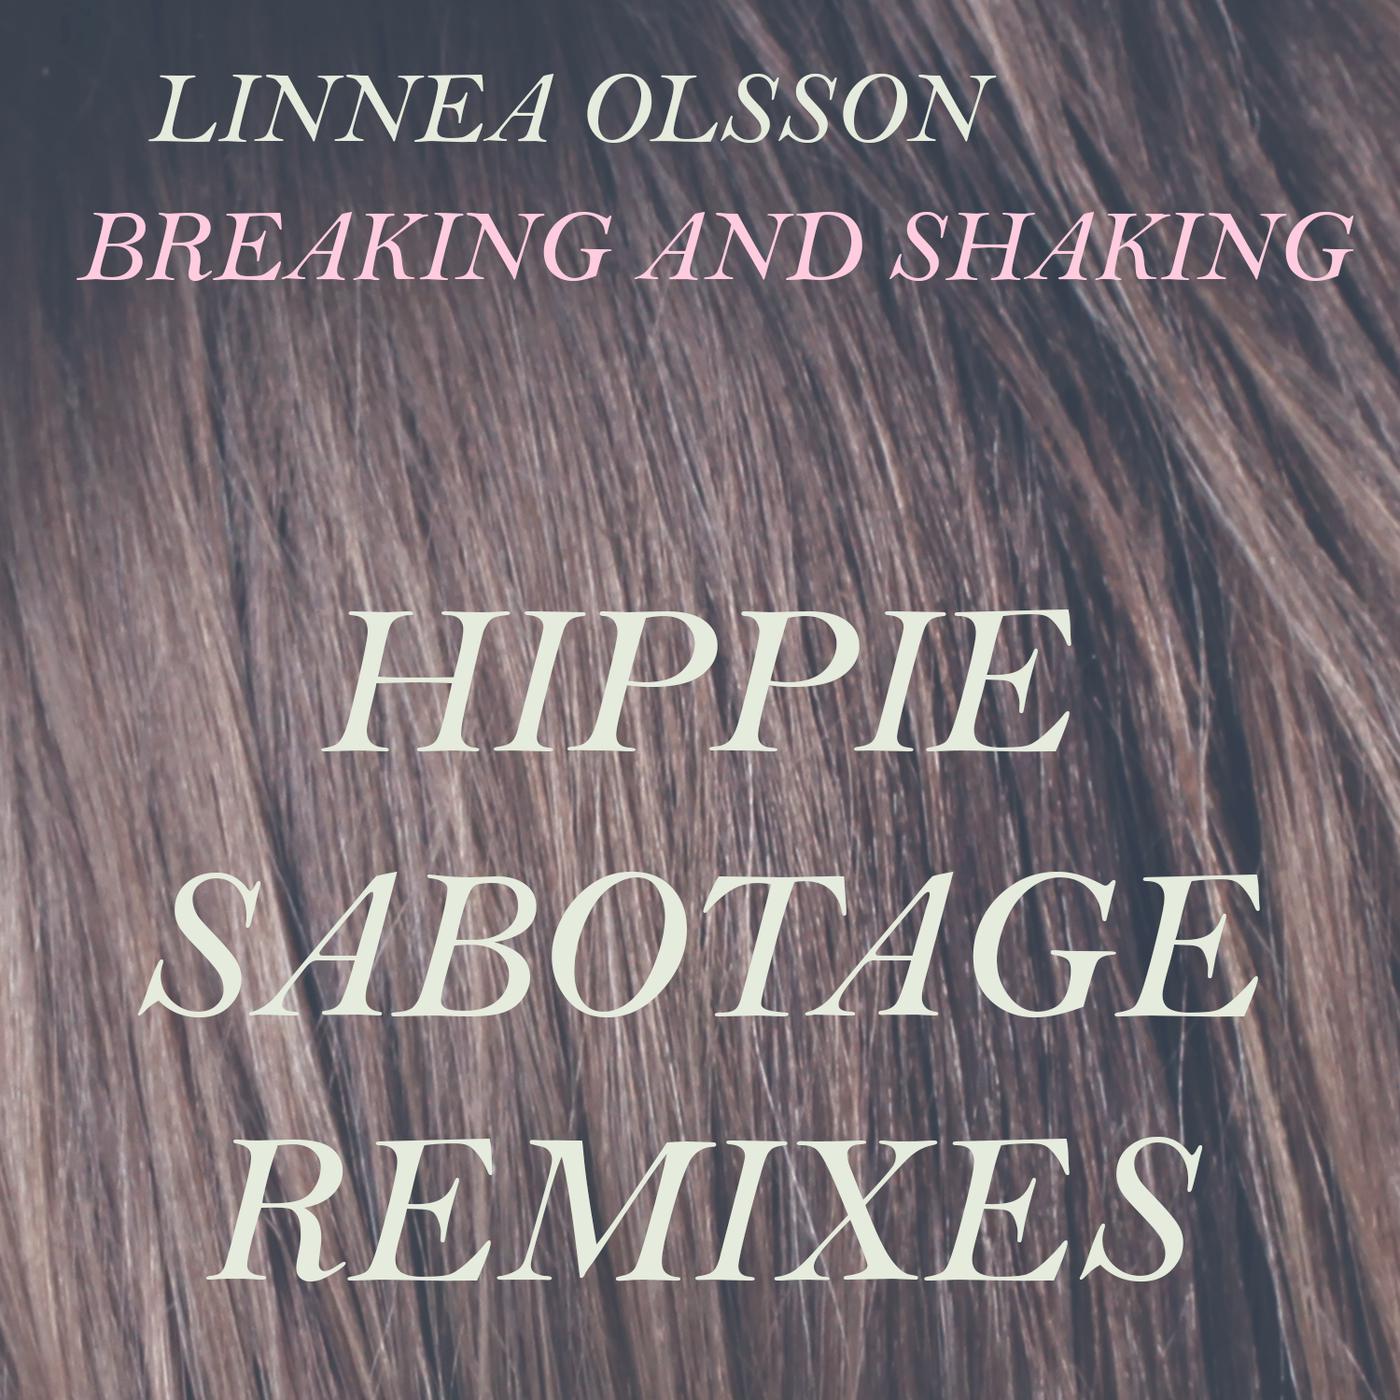 Linnea Olsson - Breaking and Shaking (Hippie Sabotage Remix, Version 4)